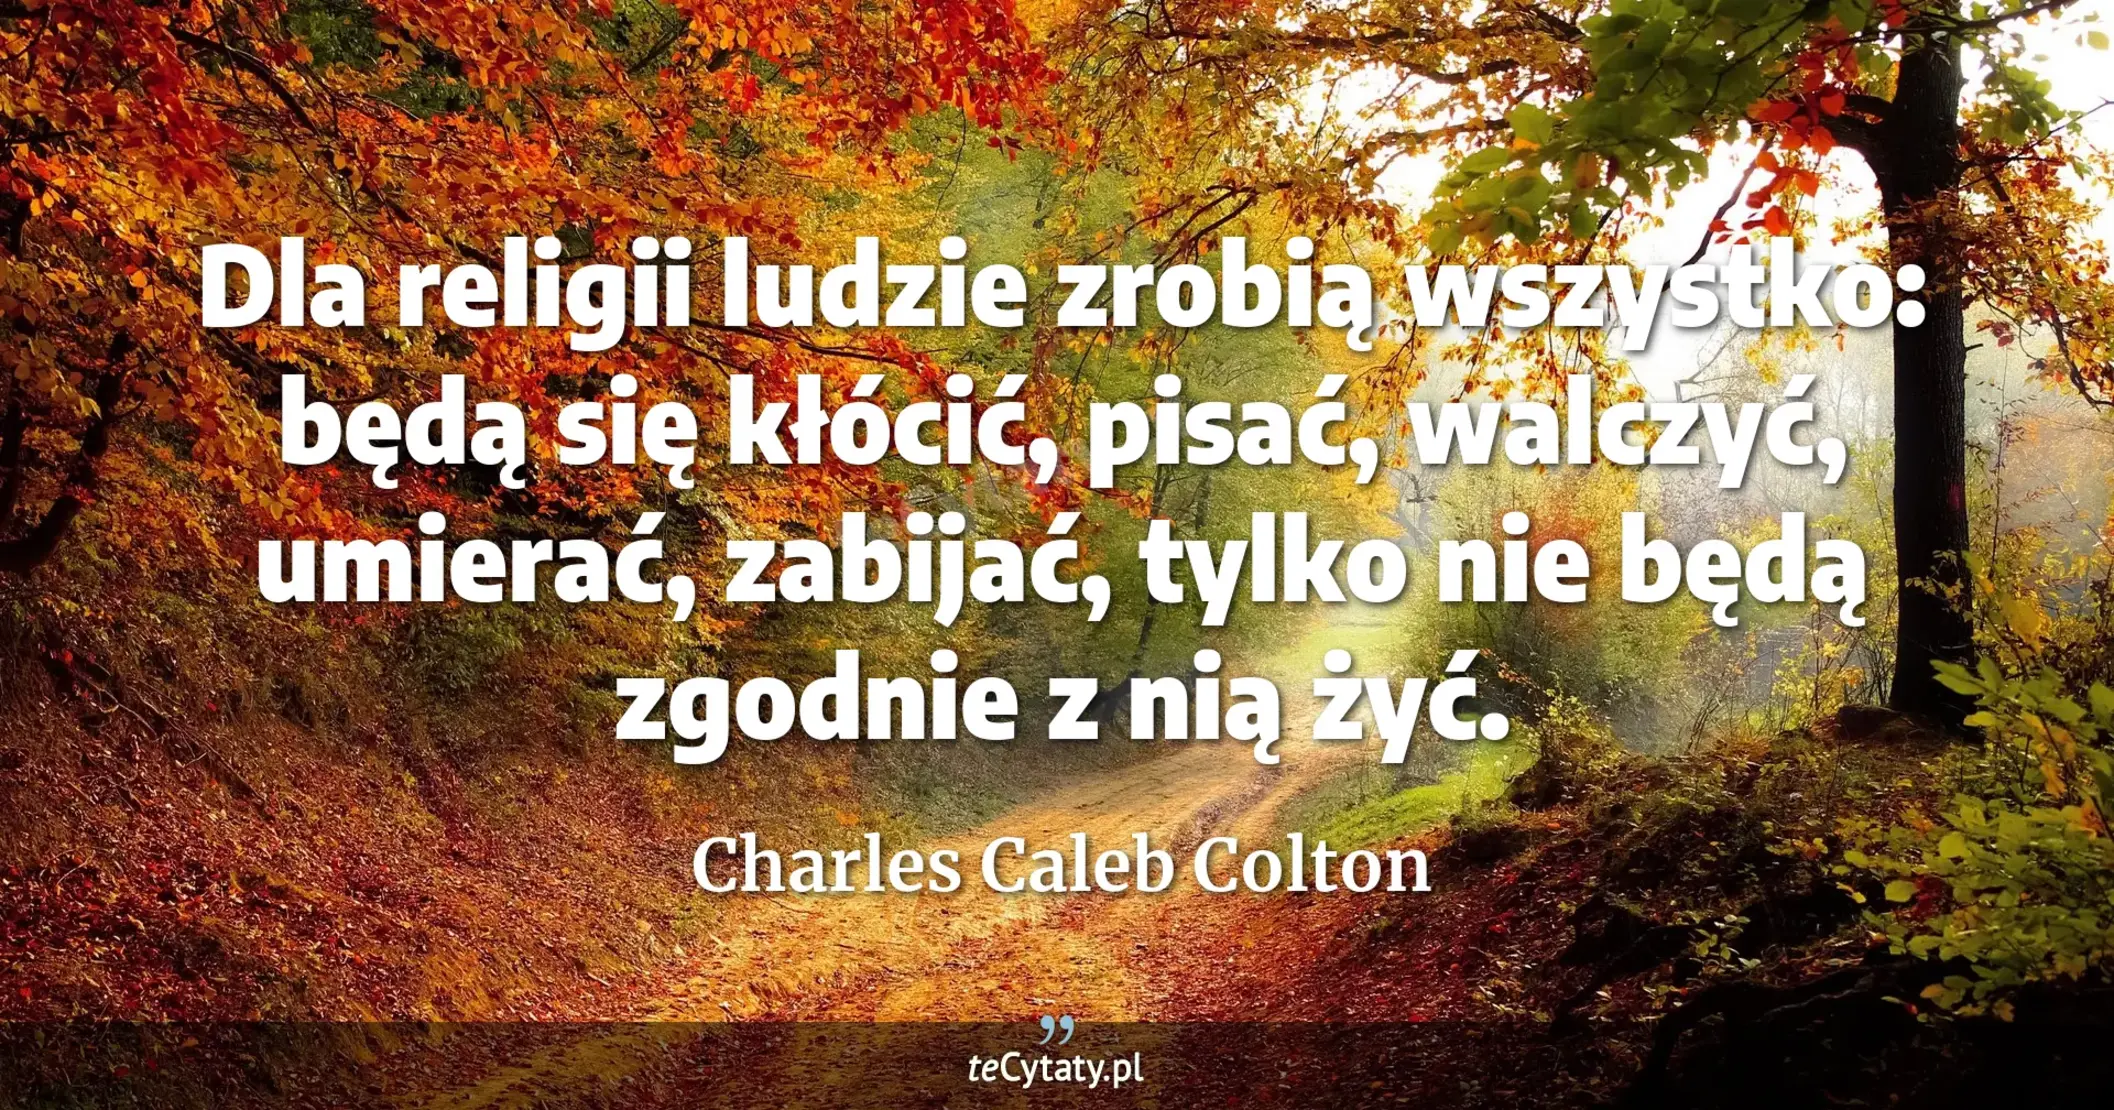 Dla religii ludzie zrobią wszystko: będą się kłócić, pisać, walczyć, umierać, zabijać, tylko nie będą zgodnie z nią żyć. - Charles Caleb Colton